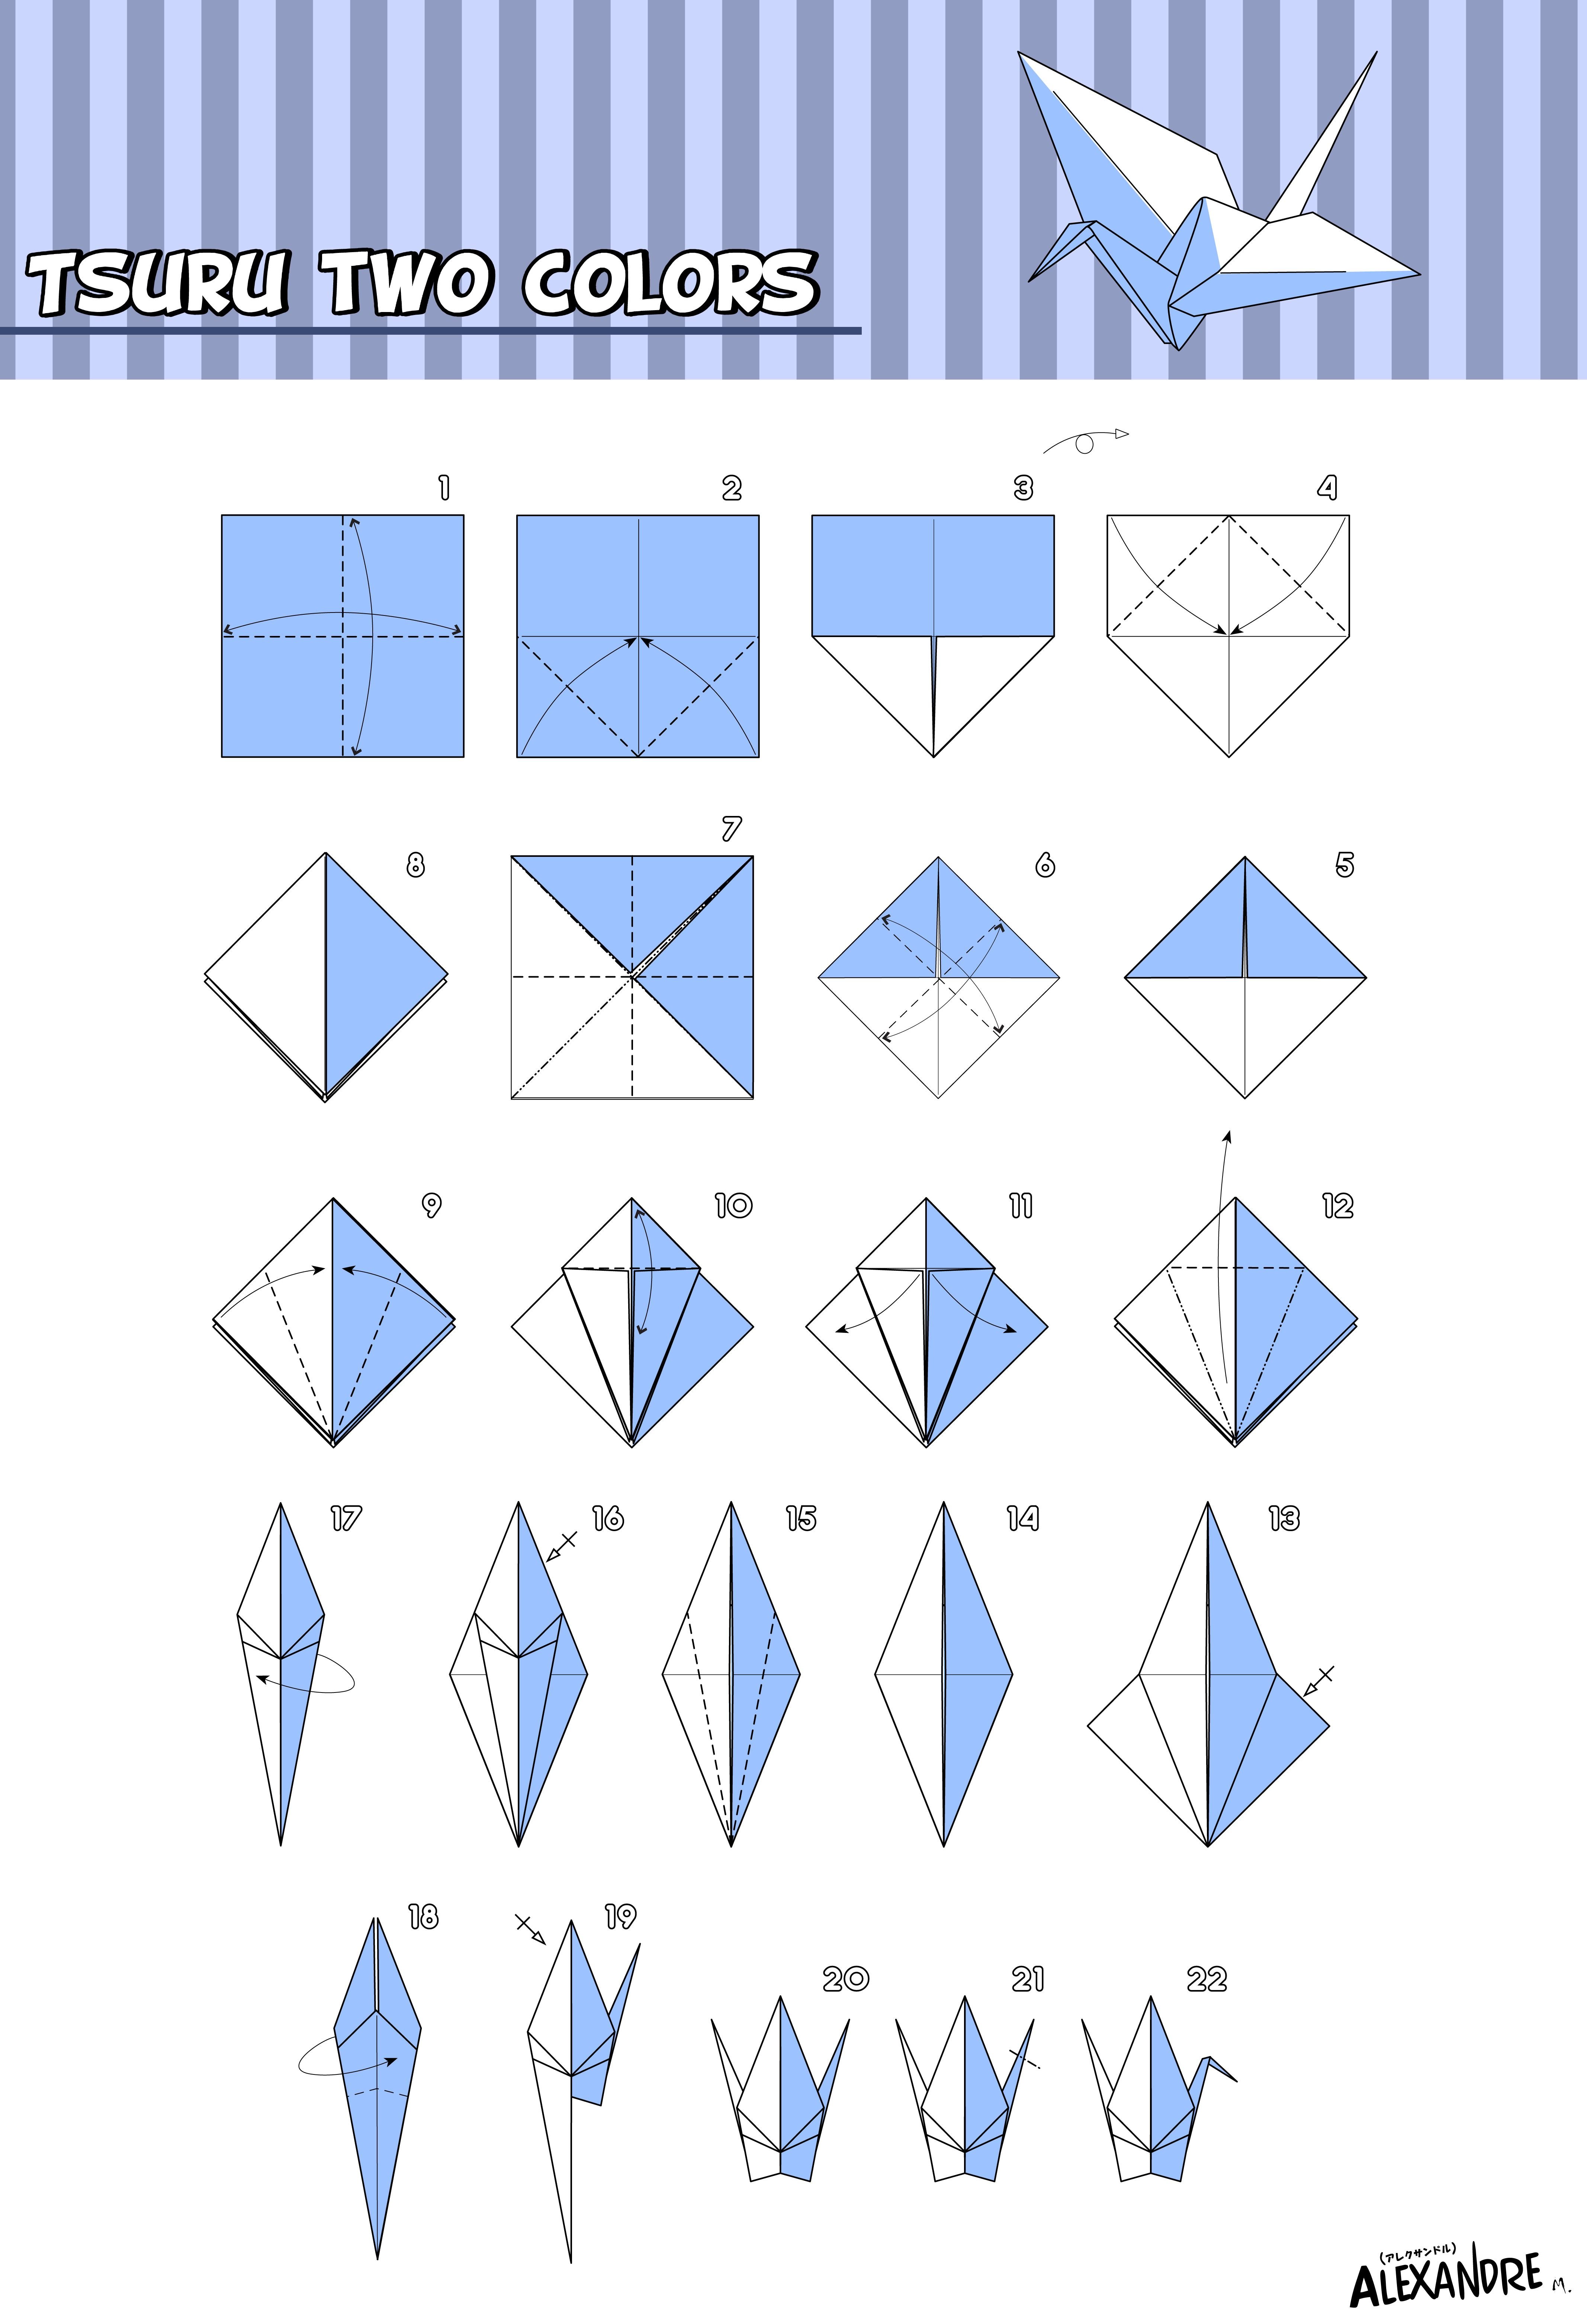 Журавли из бумаги оригами поэтапно для начинающих. Как сложить журавля из бумаги пошагово. Оригами из бумаги для начинающих Журавлик. Схема как сложить журавлика из бумаги. Журавлик Цуру оригами схема.